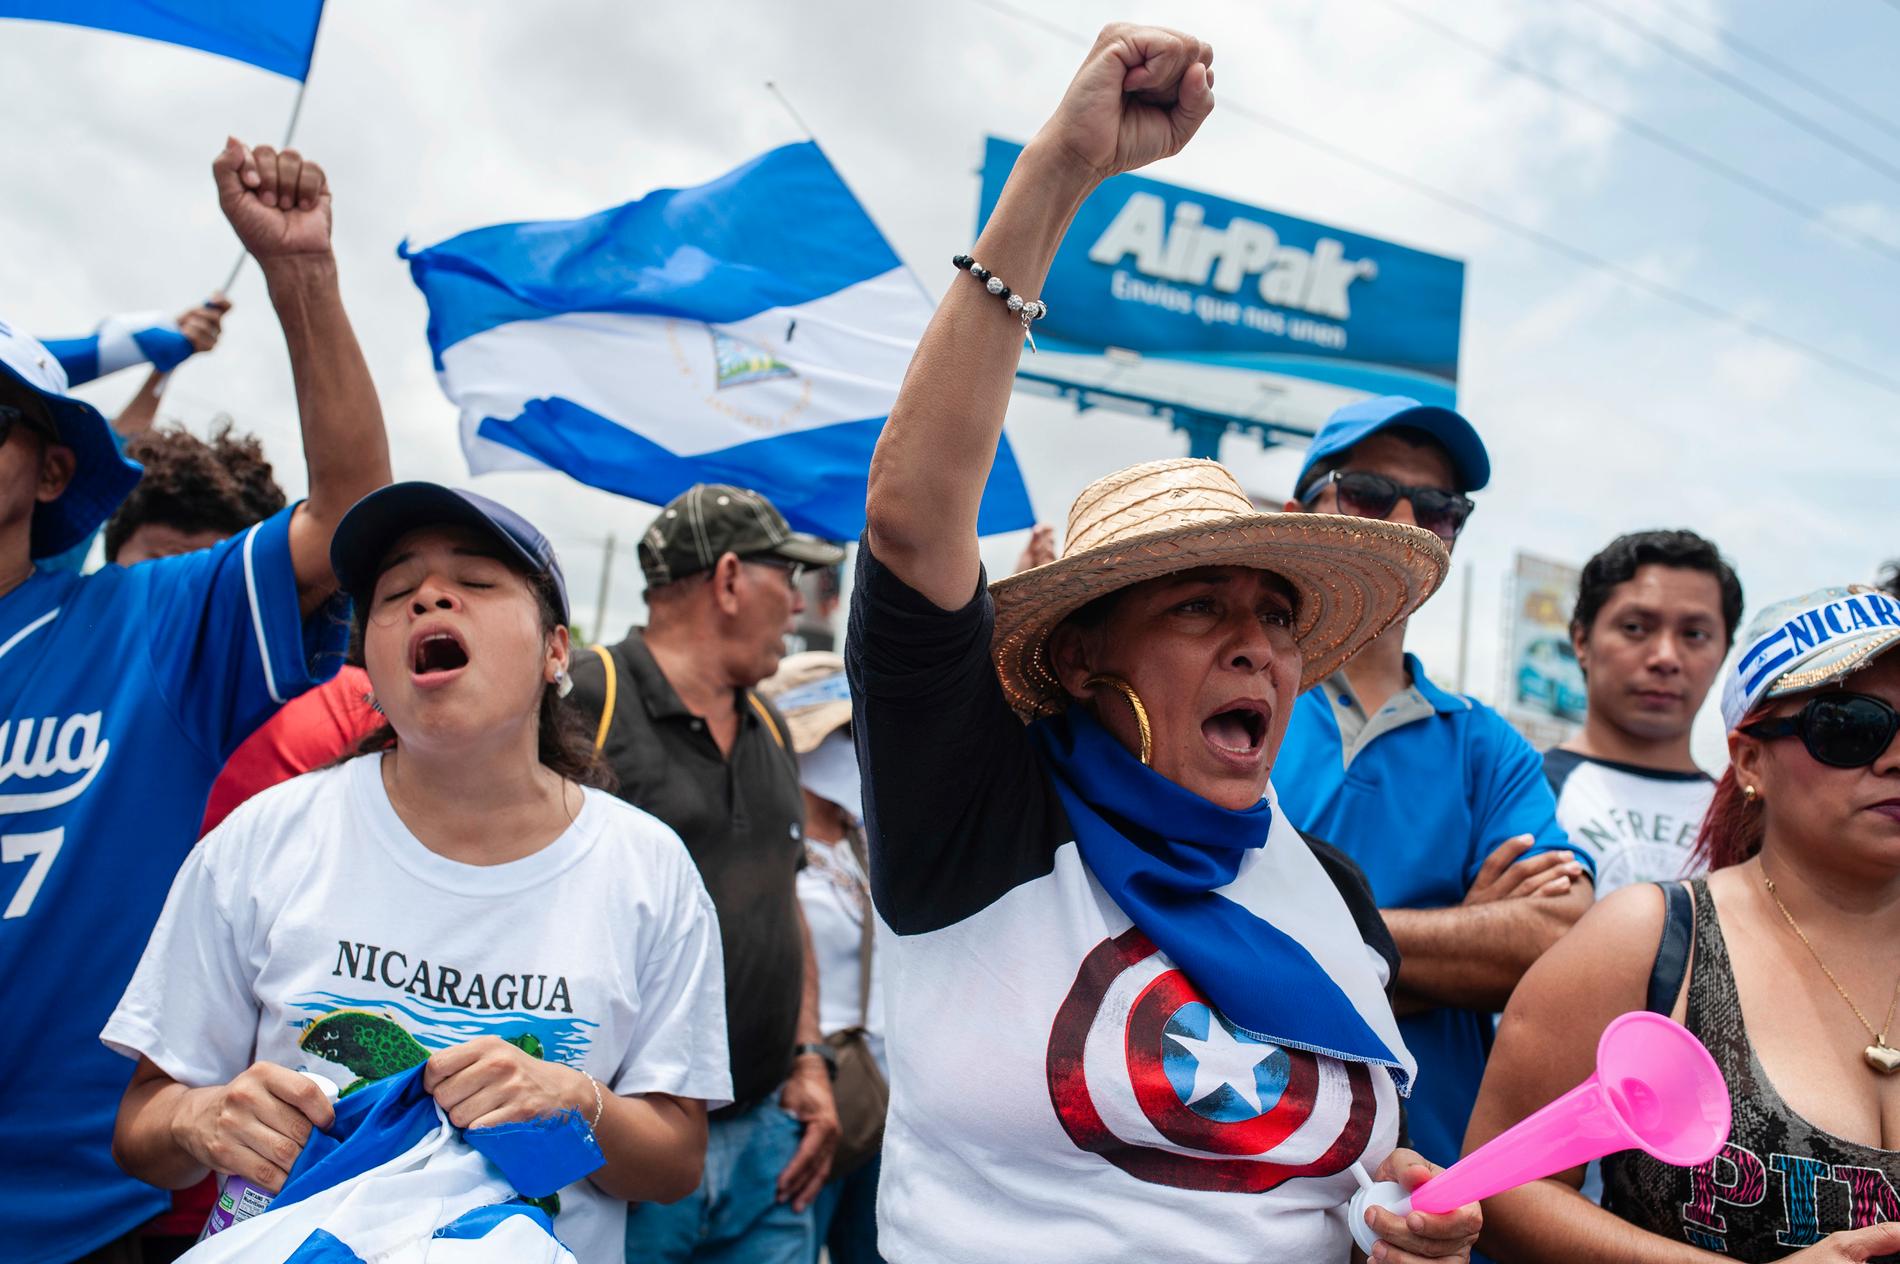 Demonstrationer mot Ortegas regering har pågått i flera månader. Bild från den gångna helgen.